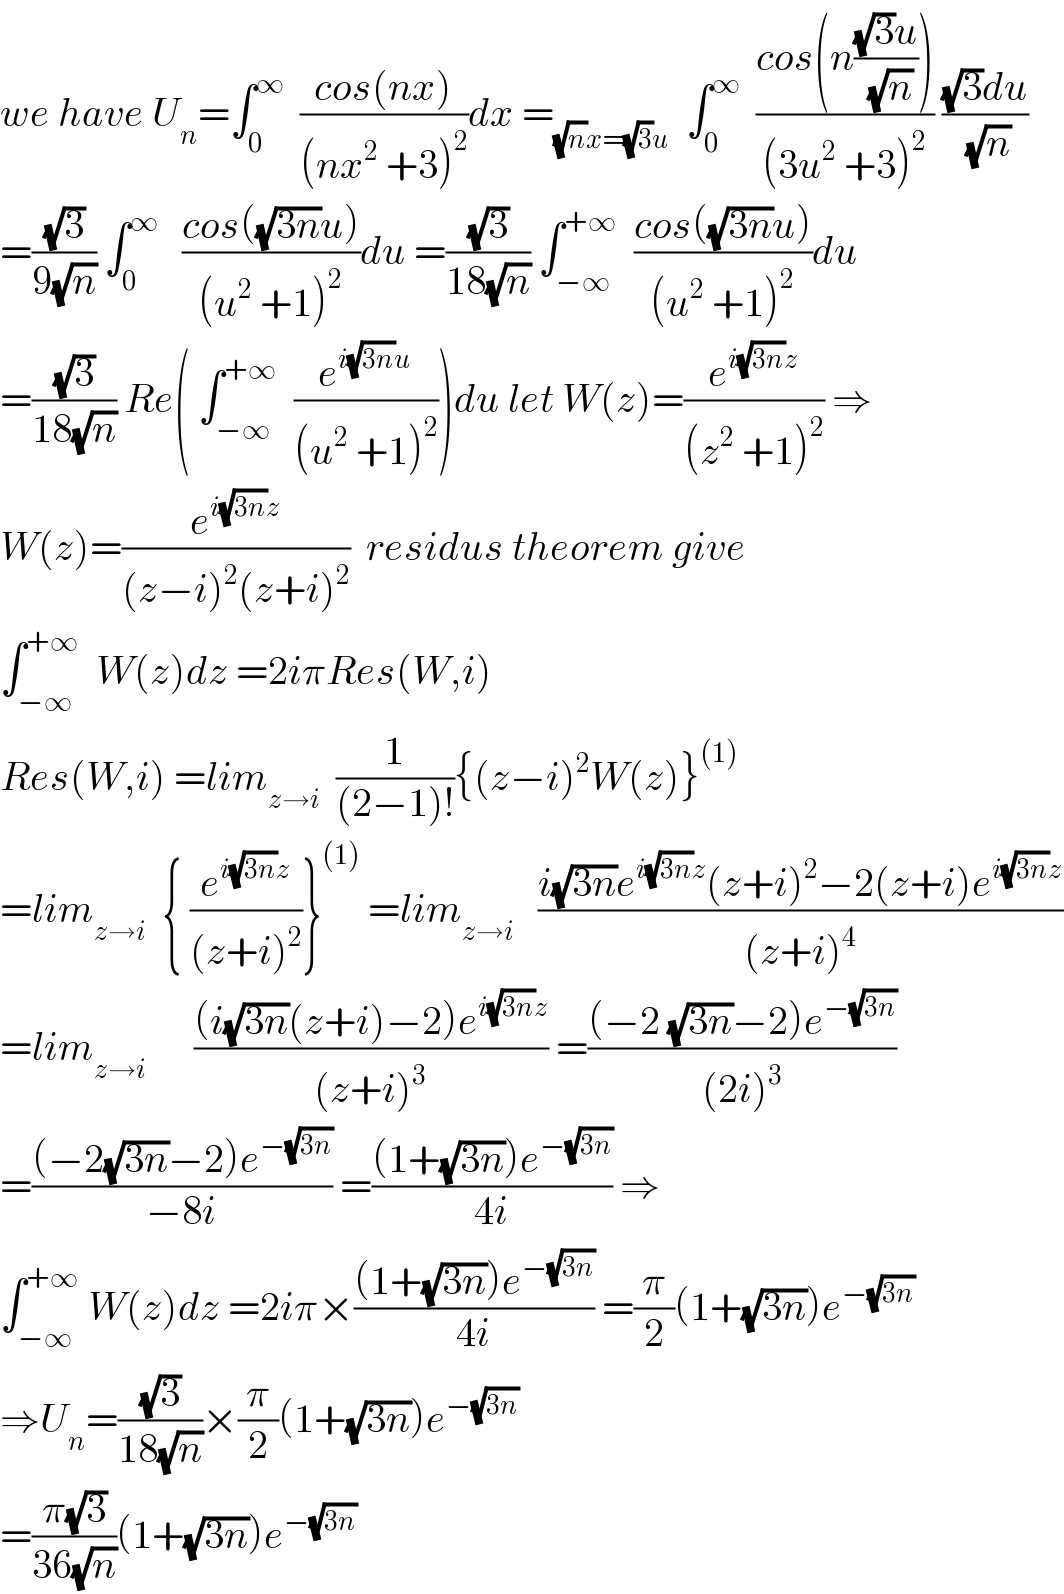 we have U_n =∫_0 ^∞   ((cos(nx))/((nx^2  +3)^2 ))dx =_((√n)x=(√3)u)   ∫_0 ^∞   ((cos(n(((√3)u)/(√n))))/((3u^2  +3)^2 )) (((√3)du)/(√n))  =((√3)/(9(√n))) ∫_0 ^∞    ((cos((√(3n))u))/((u^2  +1)^2 ))du =((√3)/(18(√n))) ∫_(−∞) ^(+∞)   ((cos((√(3n))u))/((u^2  +1)^2 ))du  =((√3)/(18(√n))) Re( ∫_(−∞) ^(+∞)   (e^(i(√(3n))u) /((u^2  +1)^2 )))du let W(z)=(e^(i(√(3n))z) /((z^2  +1)^2 )) ⇒  W(z)=(e^(i(√(3n))z) /((z−i)^2 (z+i)^2 ))  residus theorem give  ∫_(−∞) ^(+∞)   W(z)dz =2iπRes(W,i)  Res(W,i) =lim_(z→i)   (1/((2−1)!)){(z−i)^2 W(z)}^((1))   =lim_(z→i)   { (e^(i(√(3n))z) /((z+i)^2 ))}^((1))  =lim_(z→i)    ((i(√(3n))e^(i(√(3n))z) (z+i)^2 −2(z+i)e^(i(√(3n))z) )/((z+i)^4 ))  =lim_(z→i)       (((i(√(3n))(z+i)−2)e^(i(√(3n))z) )/((z+i)^3 )) =(((−2 (√(3n))−2)e^(−(√(3n))) )/((2i)^3 ))  =(((−2(√(3n))−2)e^(−(√(3n))) )/(−8i)) =(((1+(√(3n)))e^(−(√(3n))) )/(4i)) ⇒  ∫_(−∞) ^(+∞)  W(z)dz =2iπ×(((1+(√(3n)))e^(−(√(3n))) )/(4i)) =(π/2)(1+(√(3n)))e^(−(√(3n)))   ⇒U_n =((√3)/(18(√n)))×(π/2)(1+(√(3n)))e^(−(√(3n)))   =((π(√3))/(36(√n)))(1+(√(3n)))e^(−(√(3n)))   